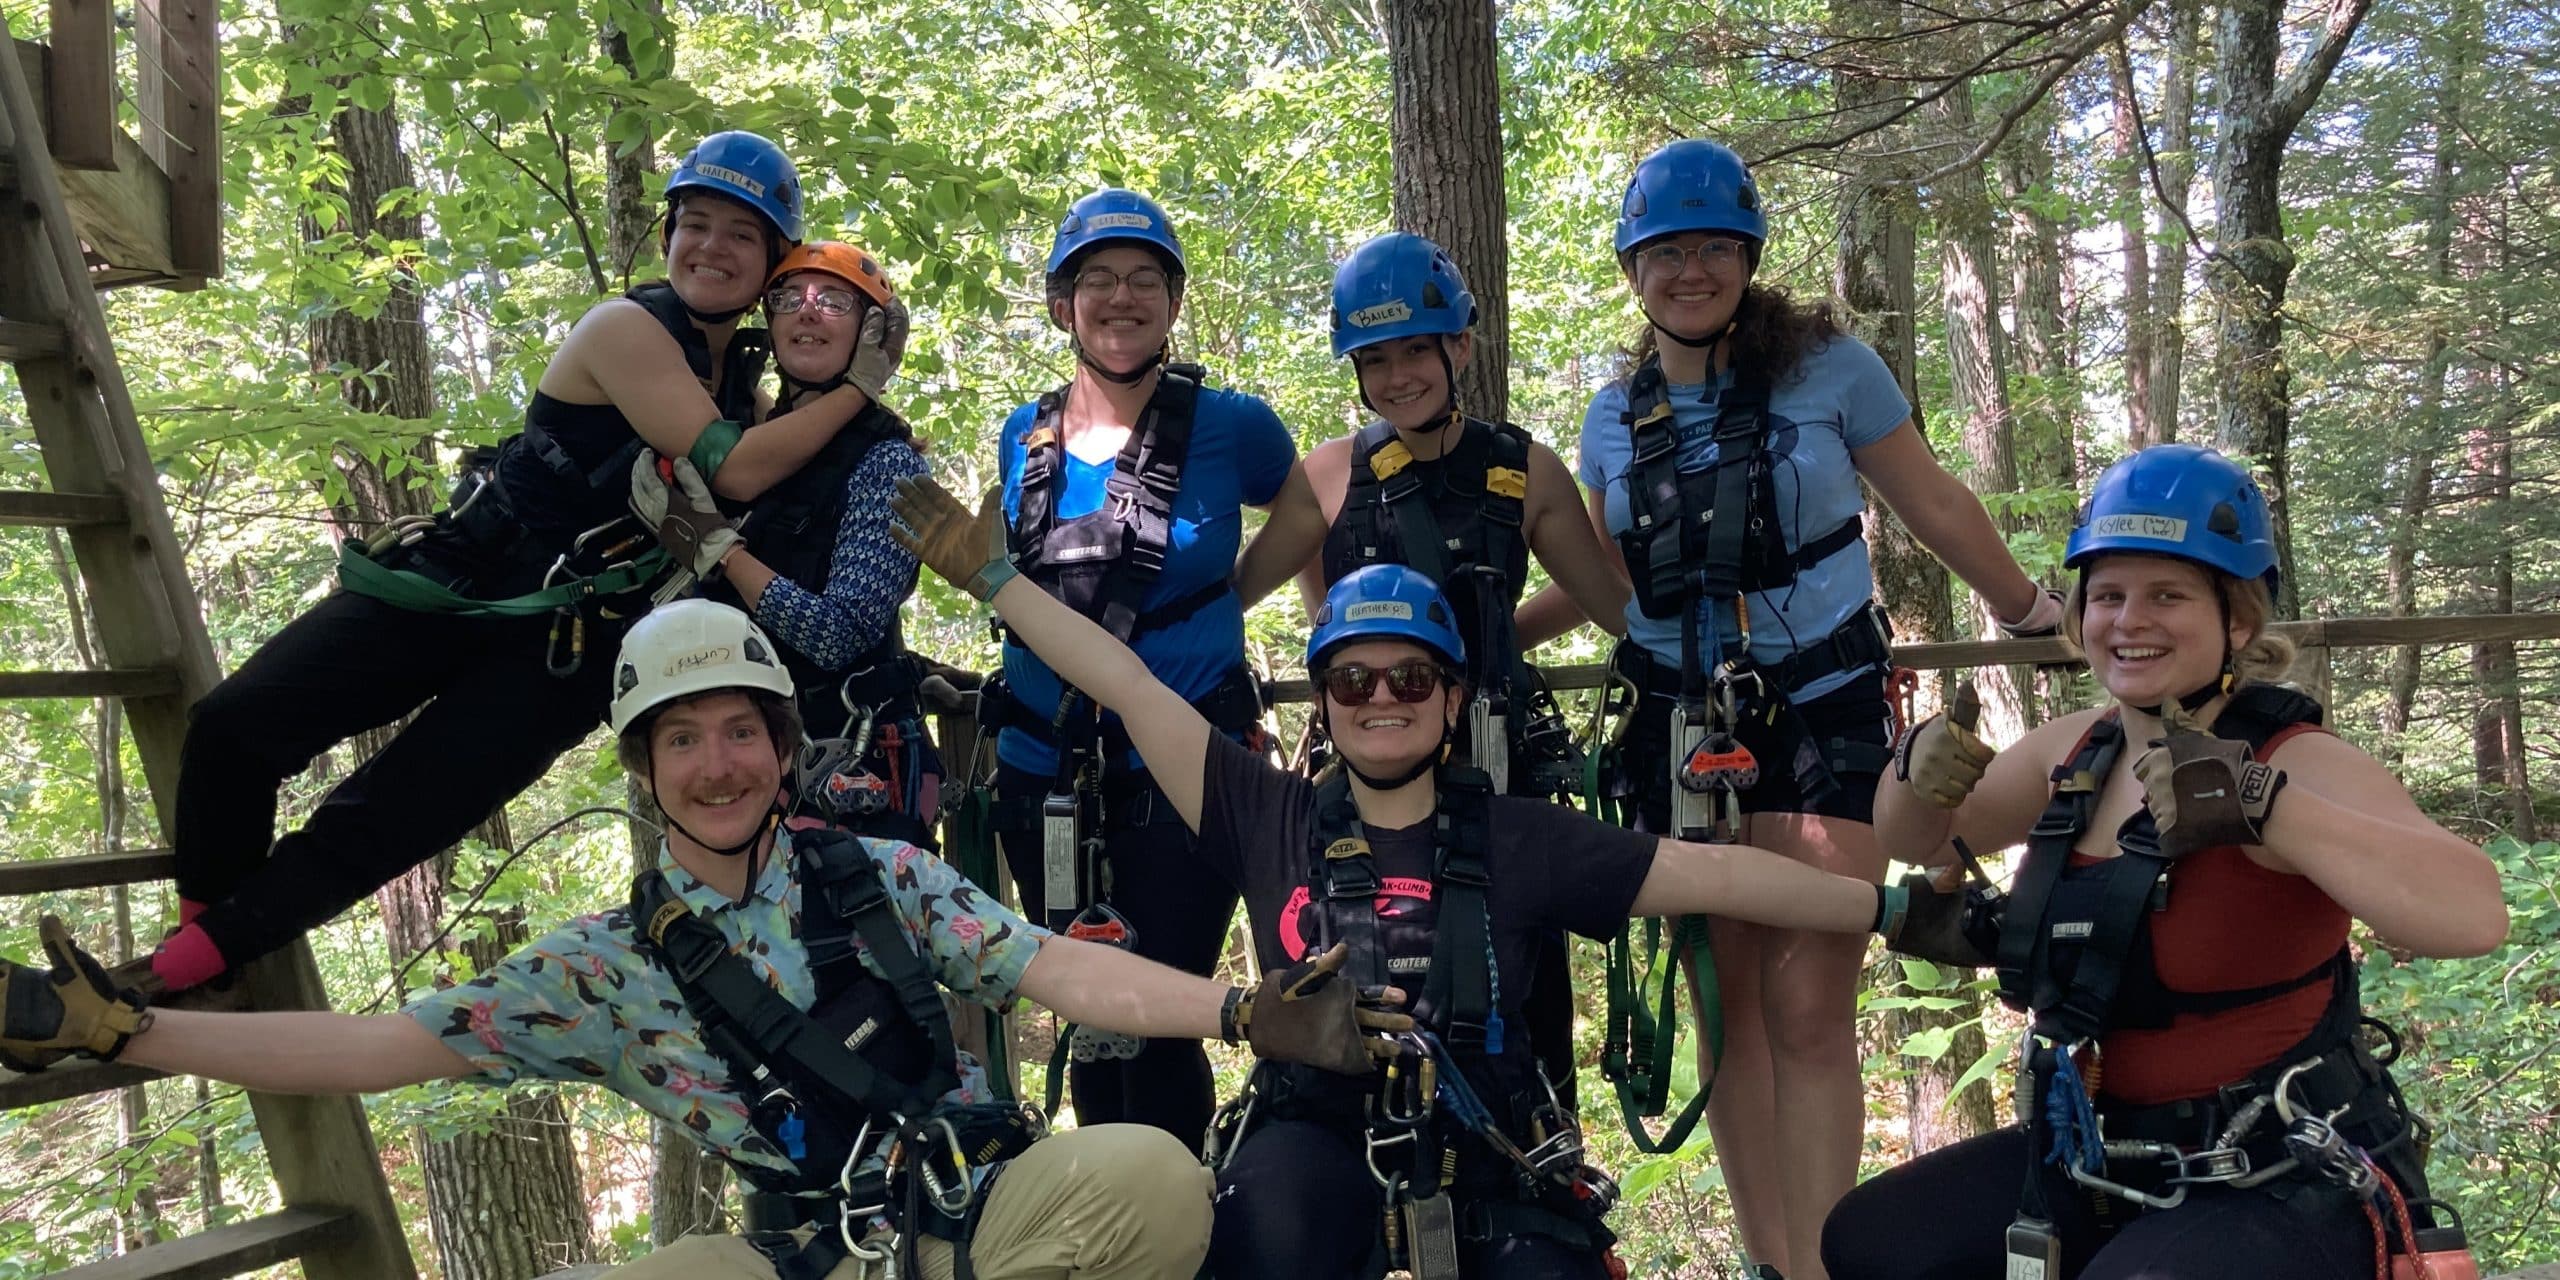 group of Zoar zip guides posing in zipline gear in the forest